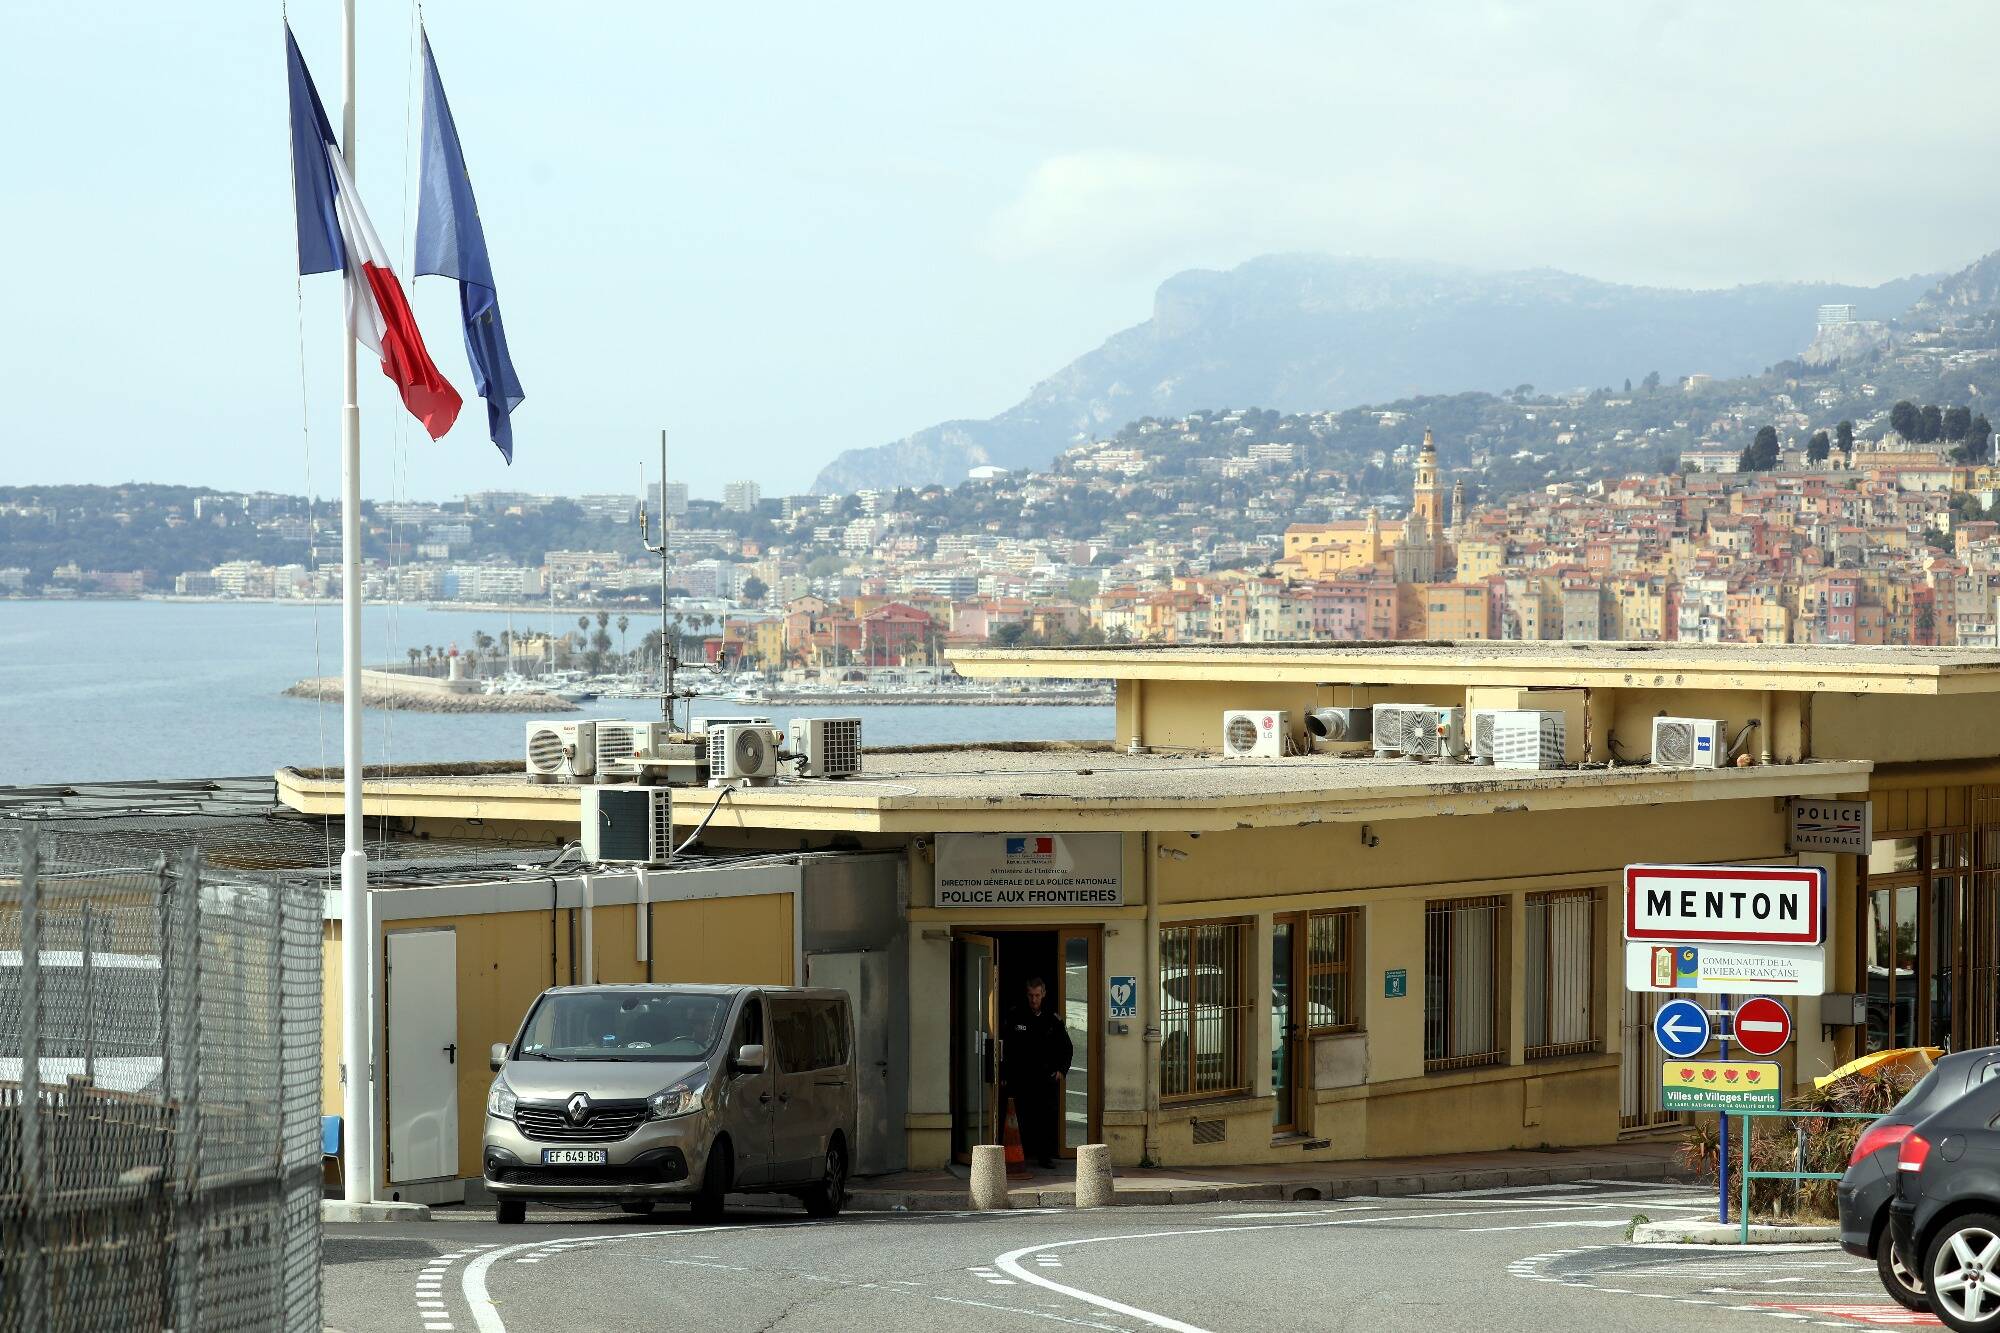 Finalmente sappiamo dove si trova il “centro di accoglienza” per migranti al confine franco-italiano.